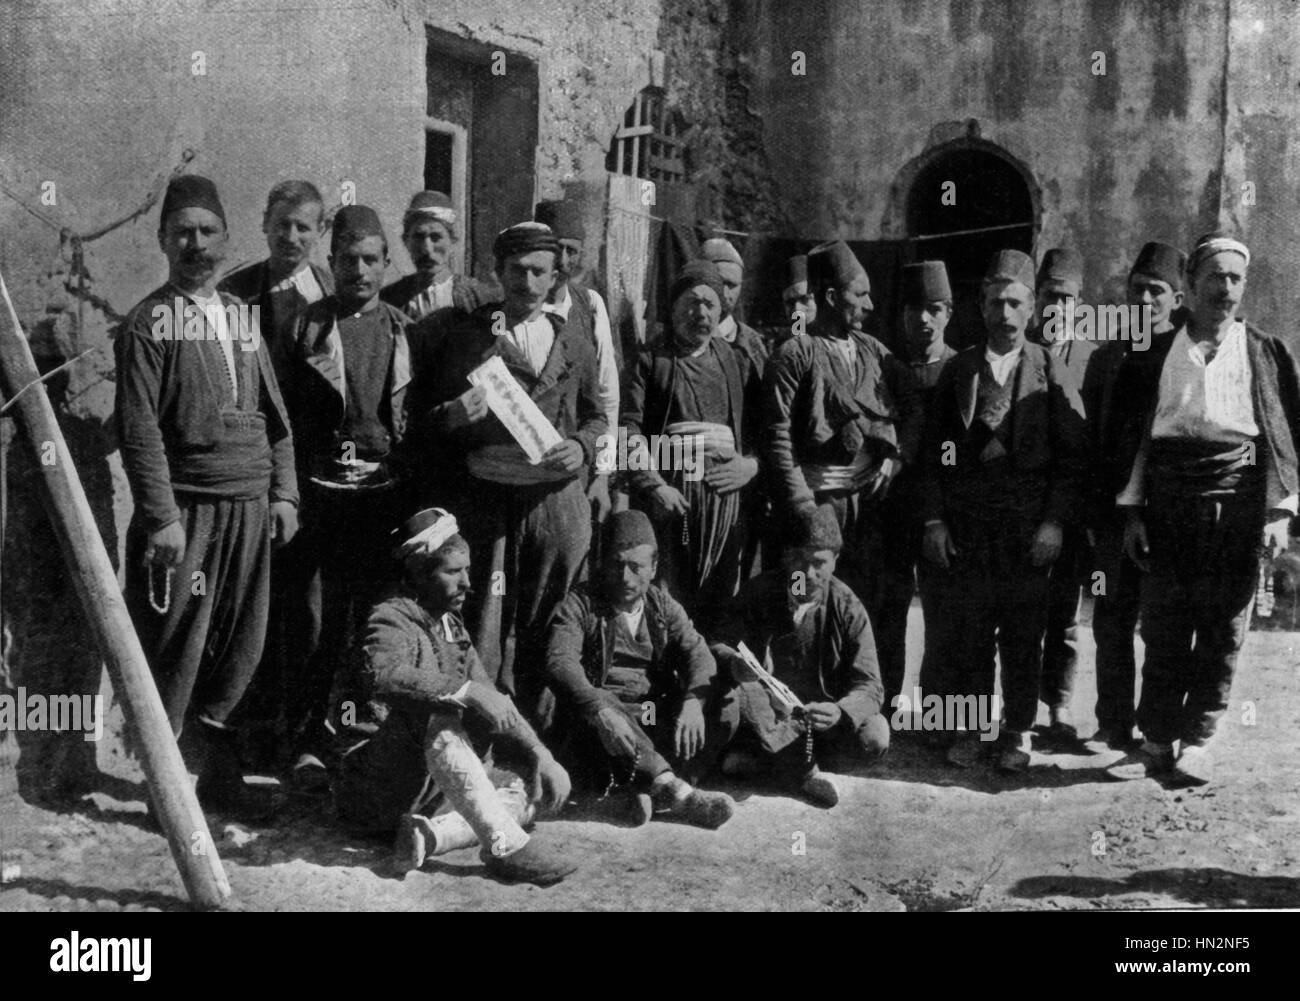 Les révolutionnaires arméniens qui ont pris part à l'attaque contre la Banque ottomane à Constantinople Turquie 1896 Banque D'Images